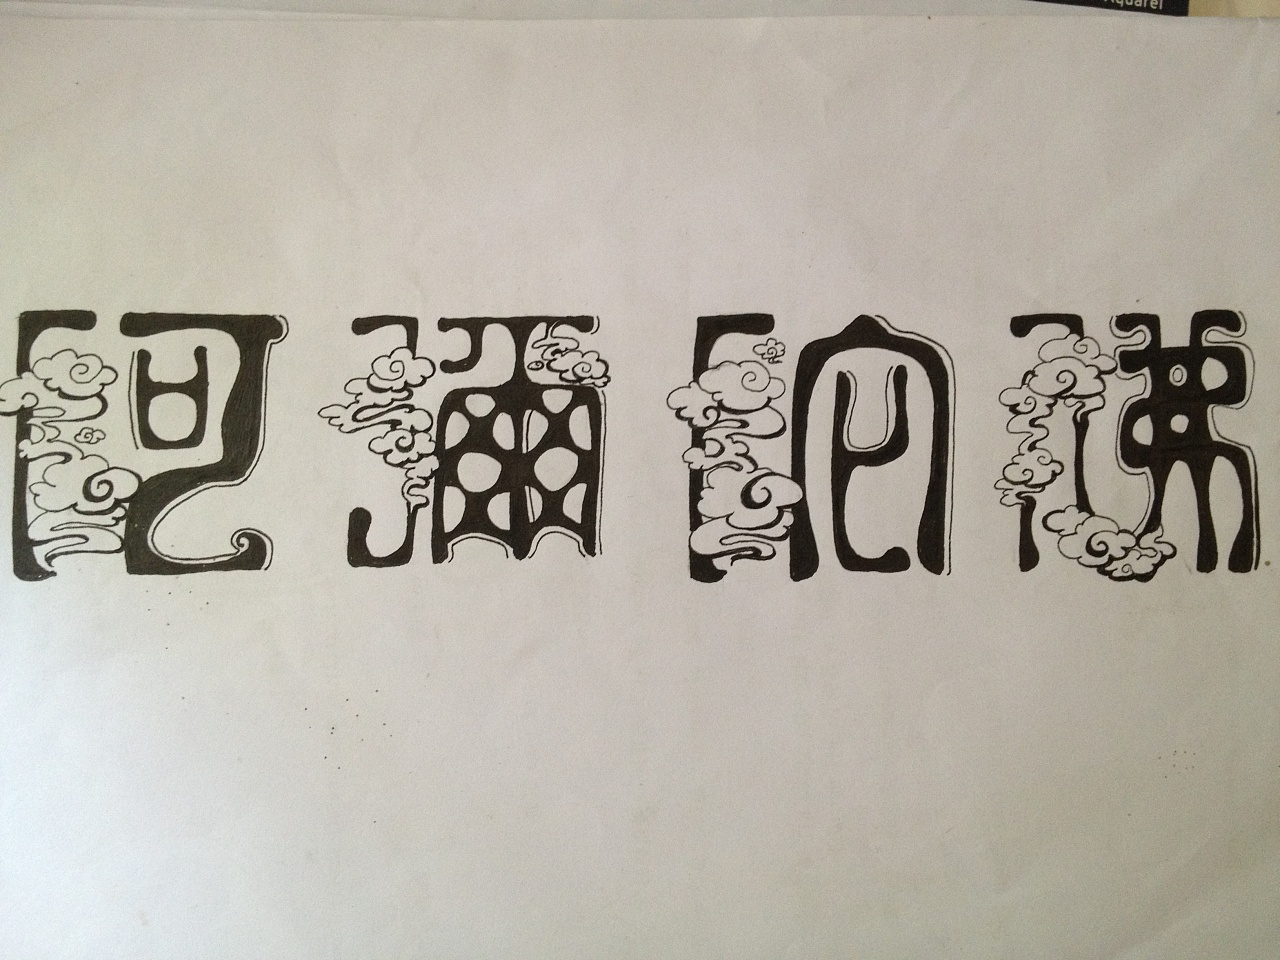 一组"阿弥陀佛"的文字设计草稿